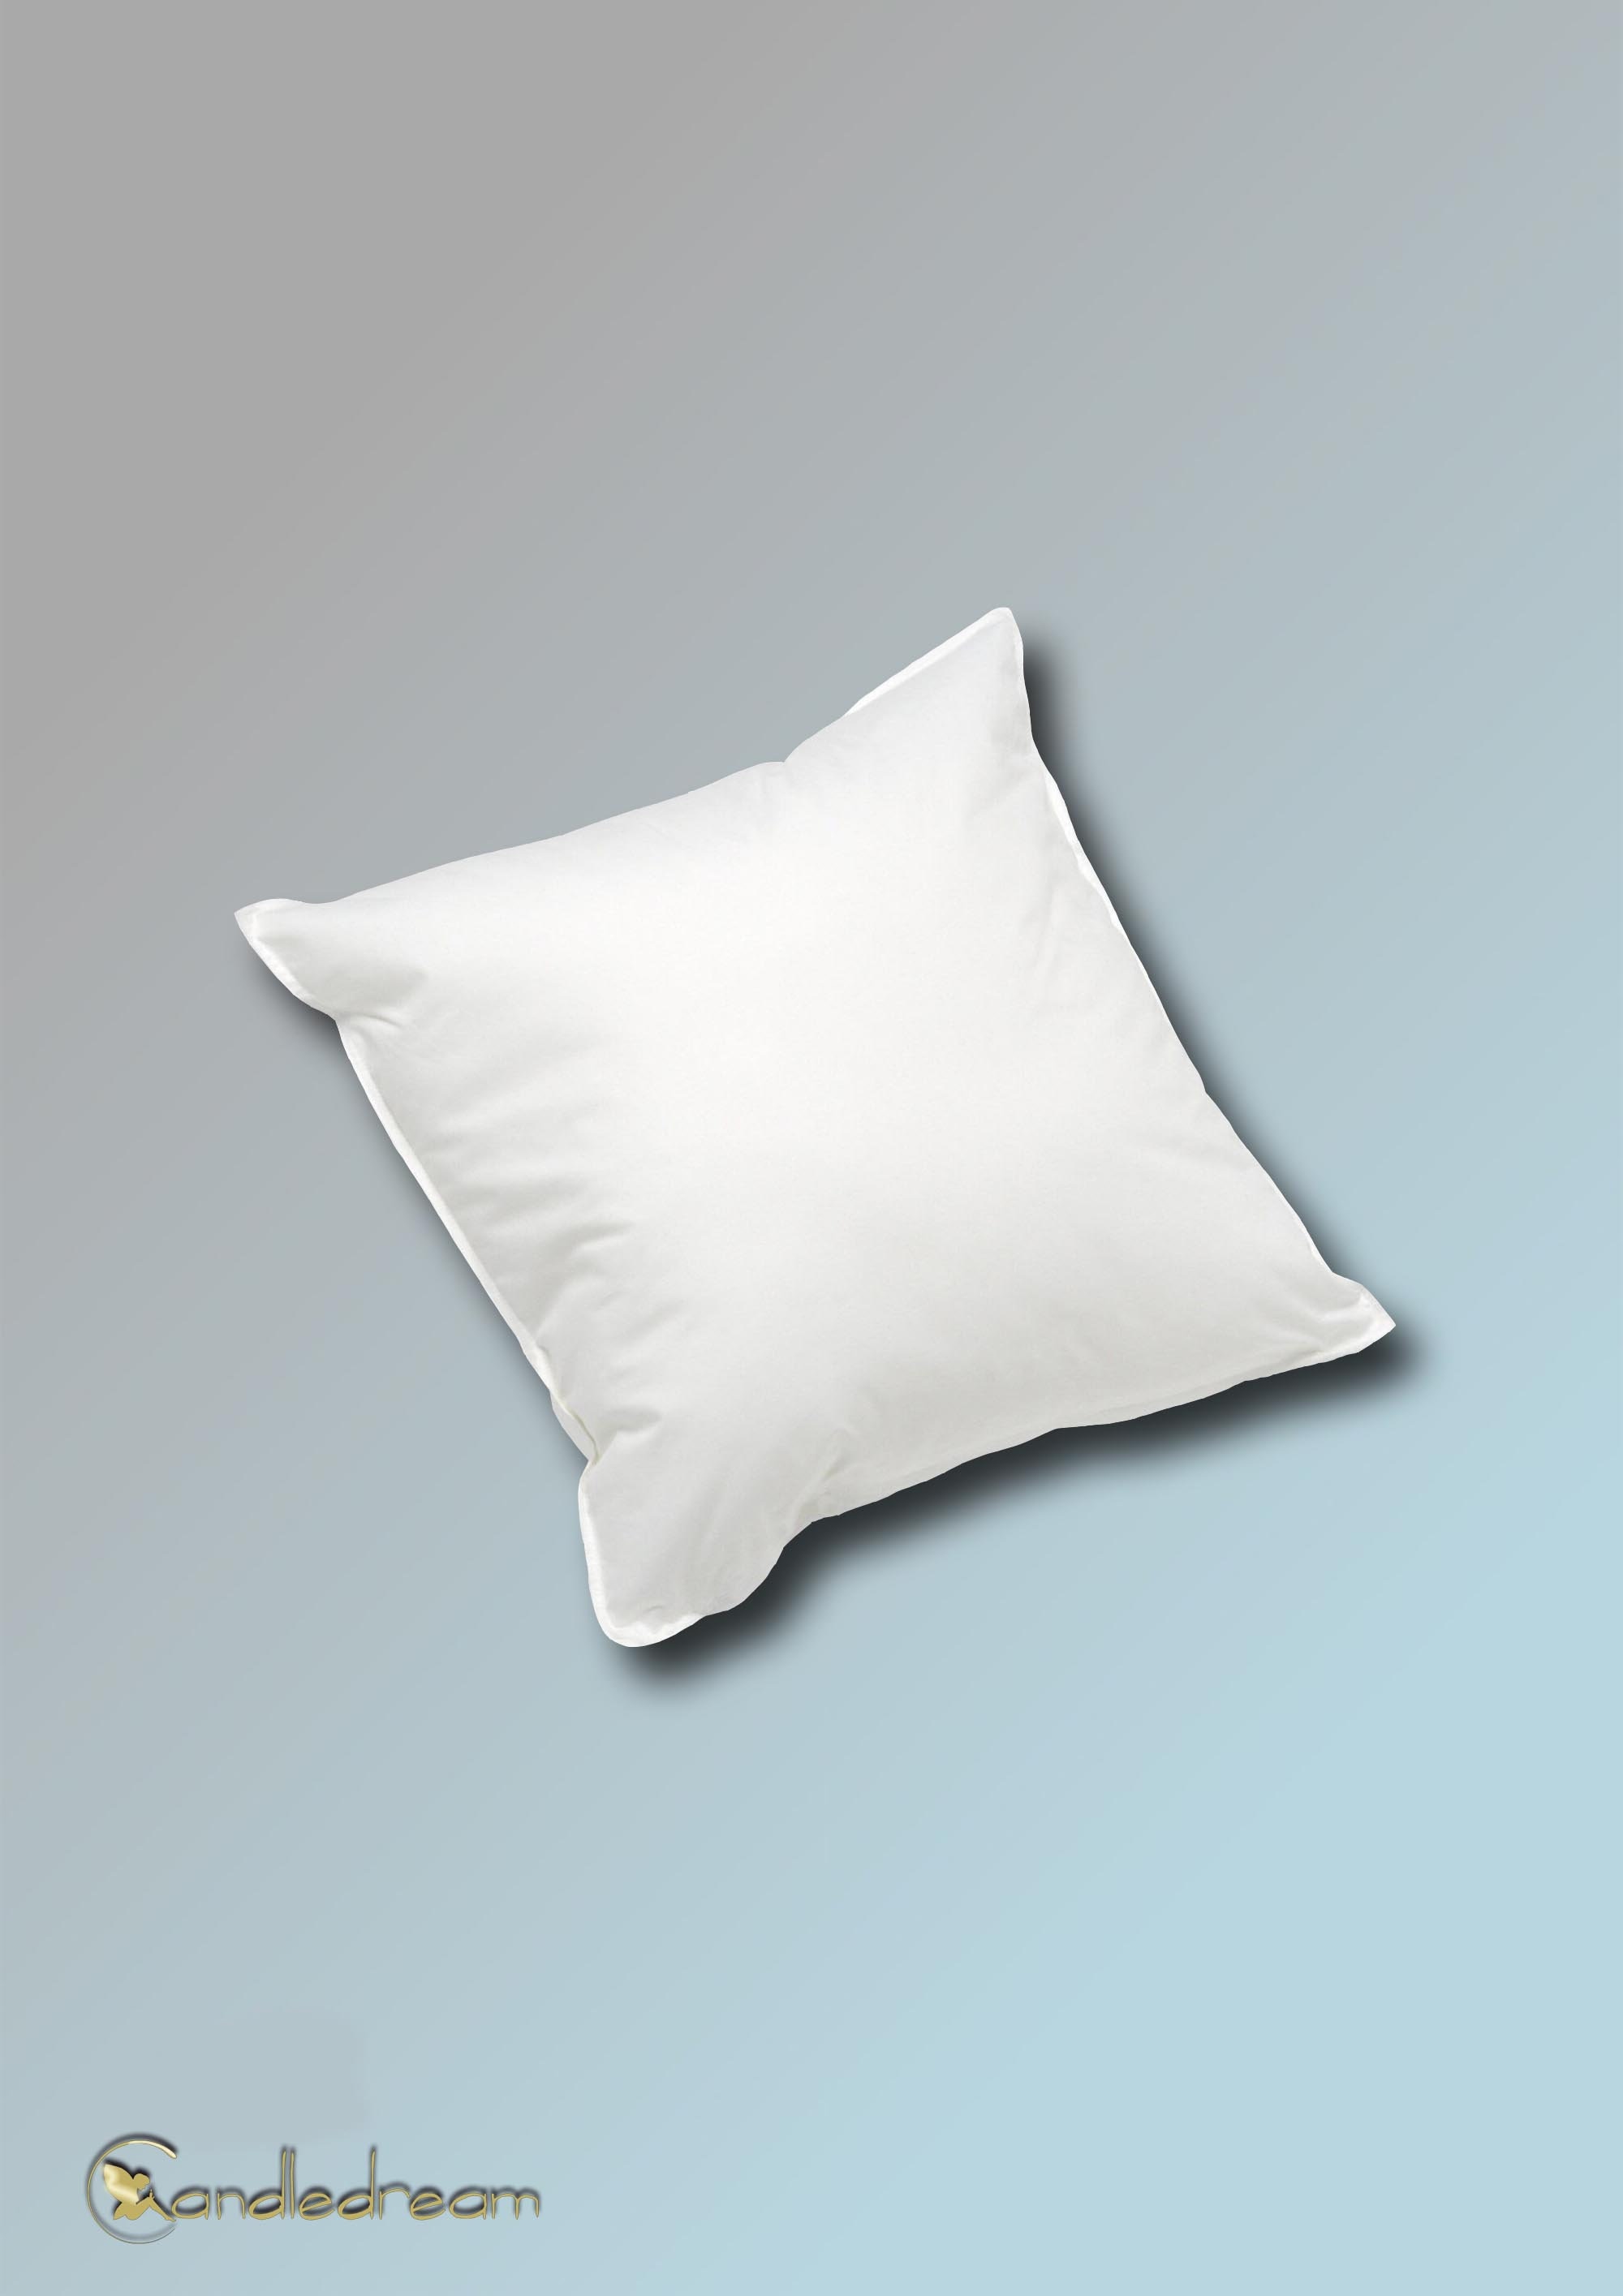  Fhdang Decor 45cm x 45cm Soft Cushion Pad Pillow